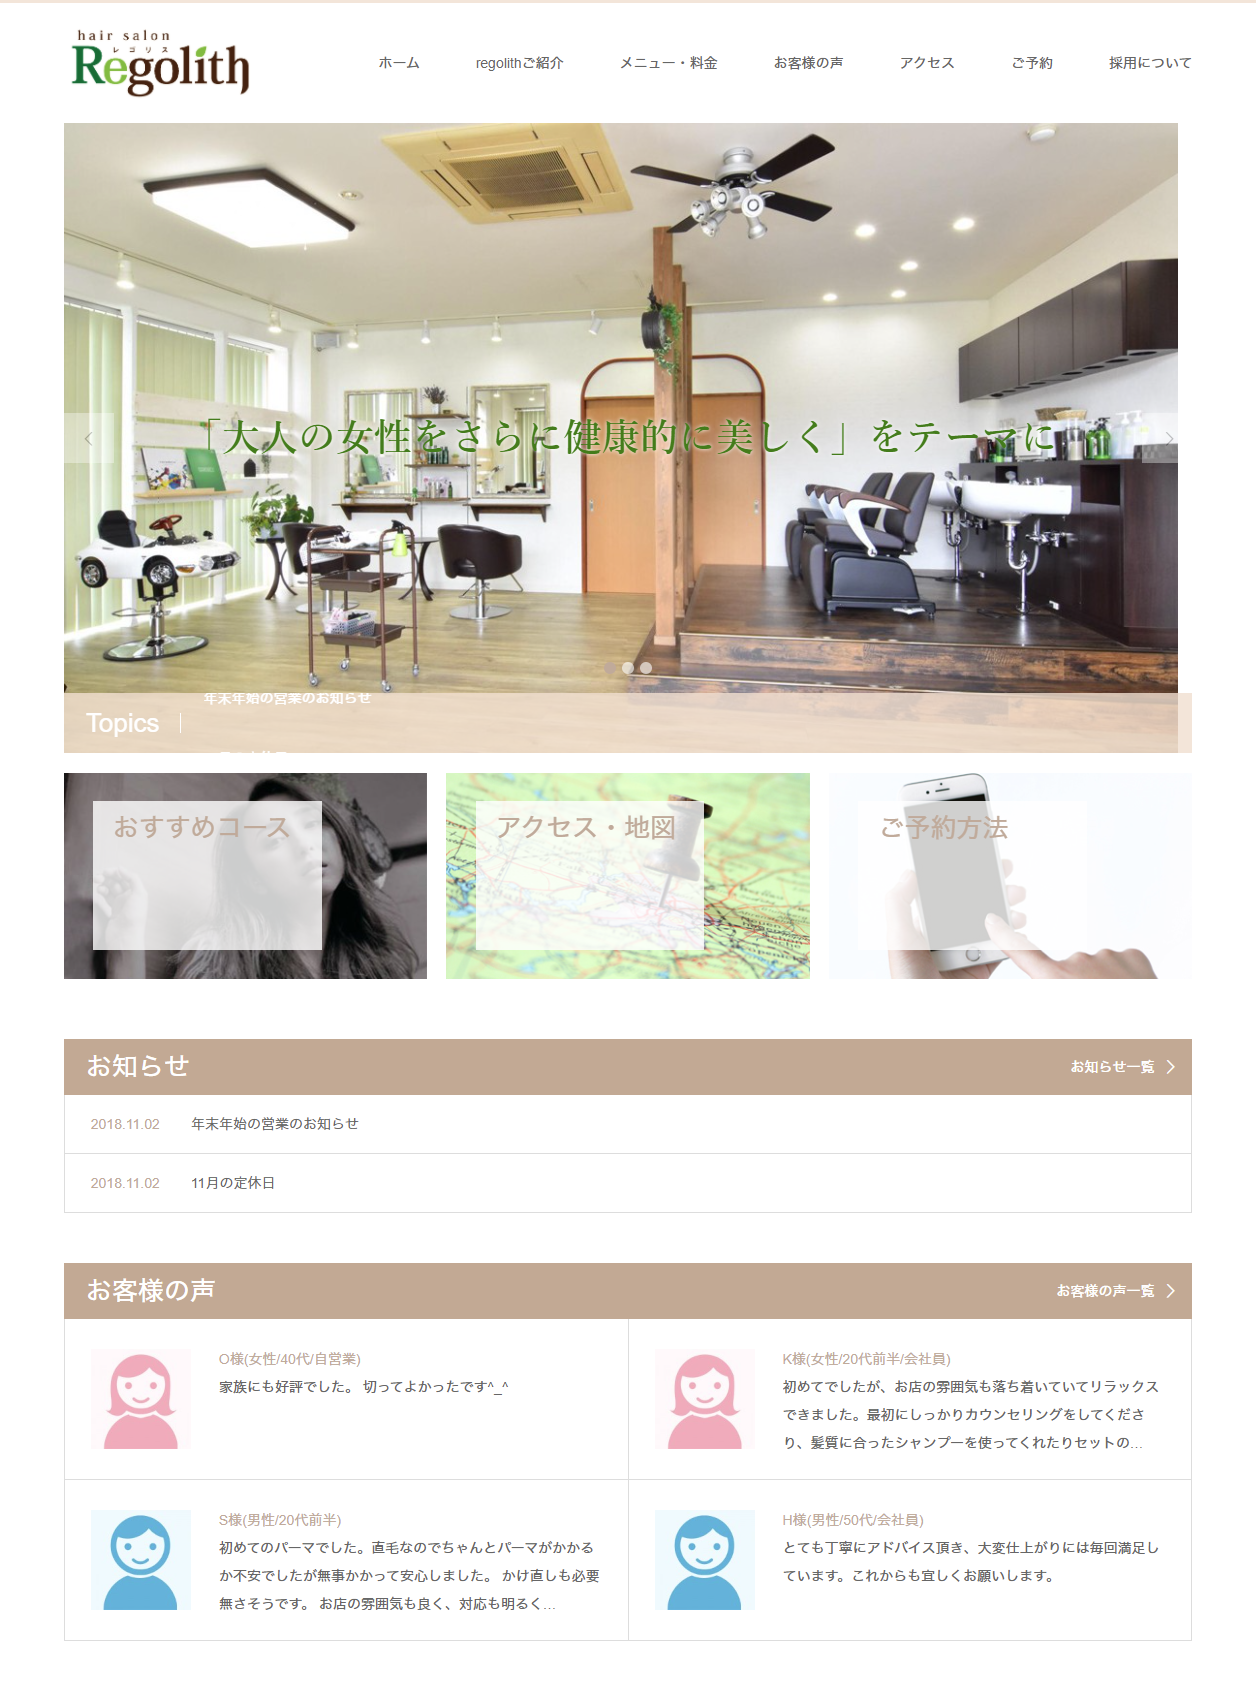 ホームページ制作 美容室レゴリス様 飯田市 飯田市のホームページ制作ならデザインスタジオir Webデザイン チラシ パンフレット制作